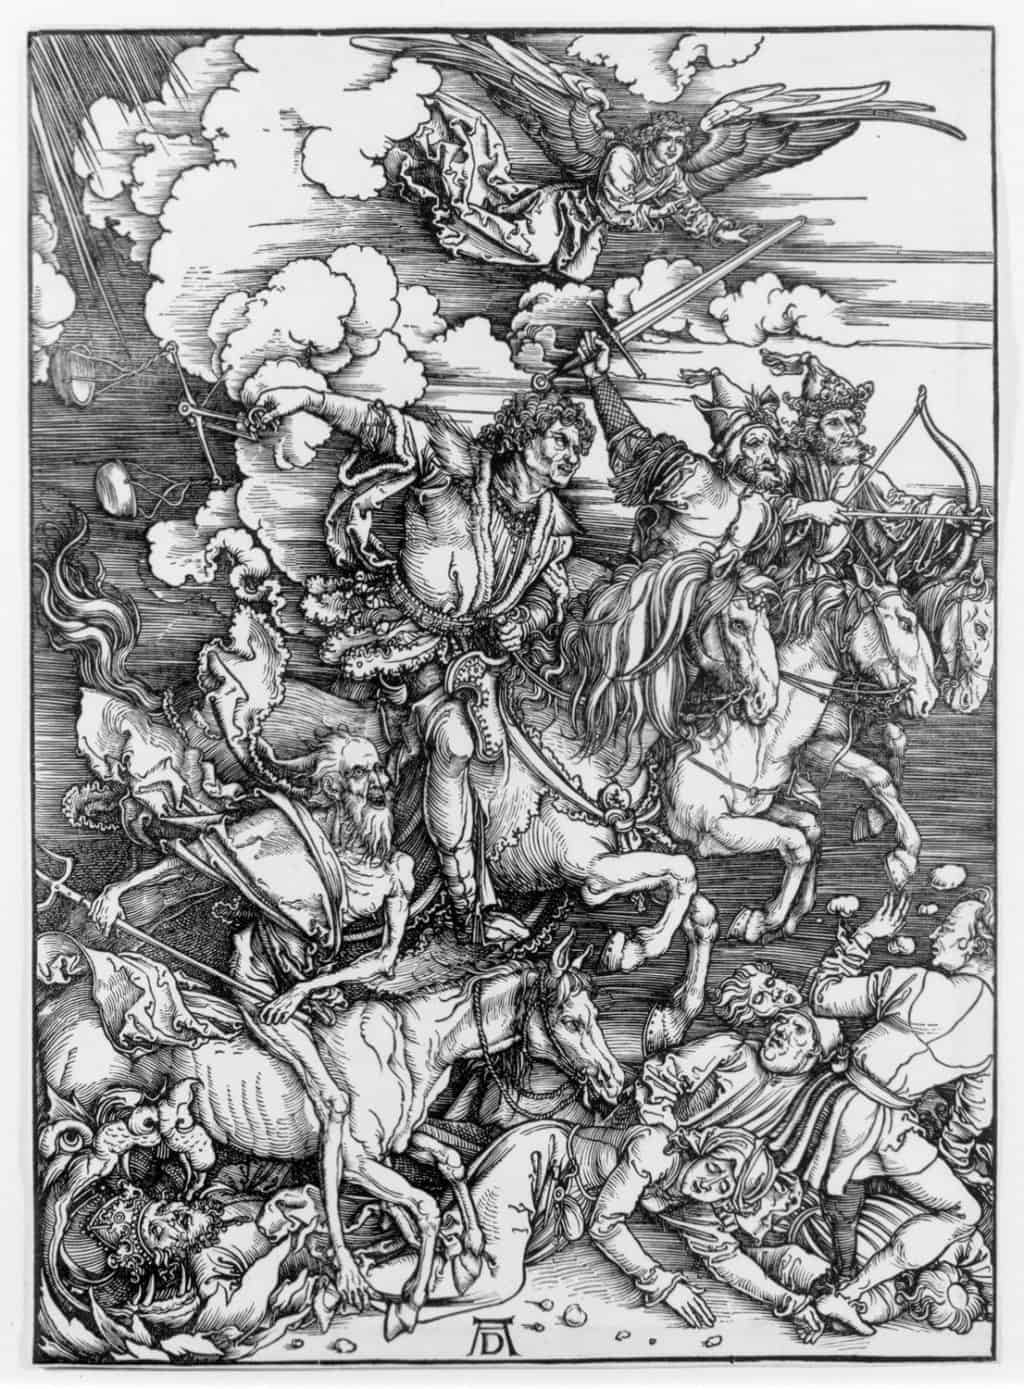 Four Horsemen of the Apocalypse by Albrecht Durer